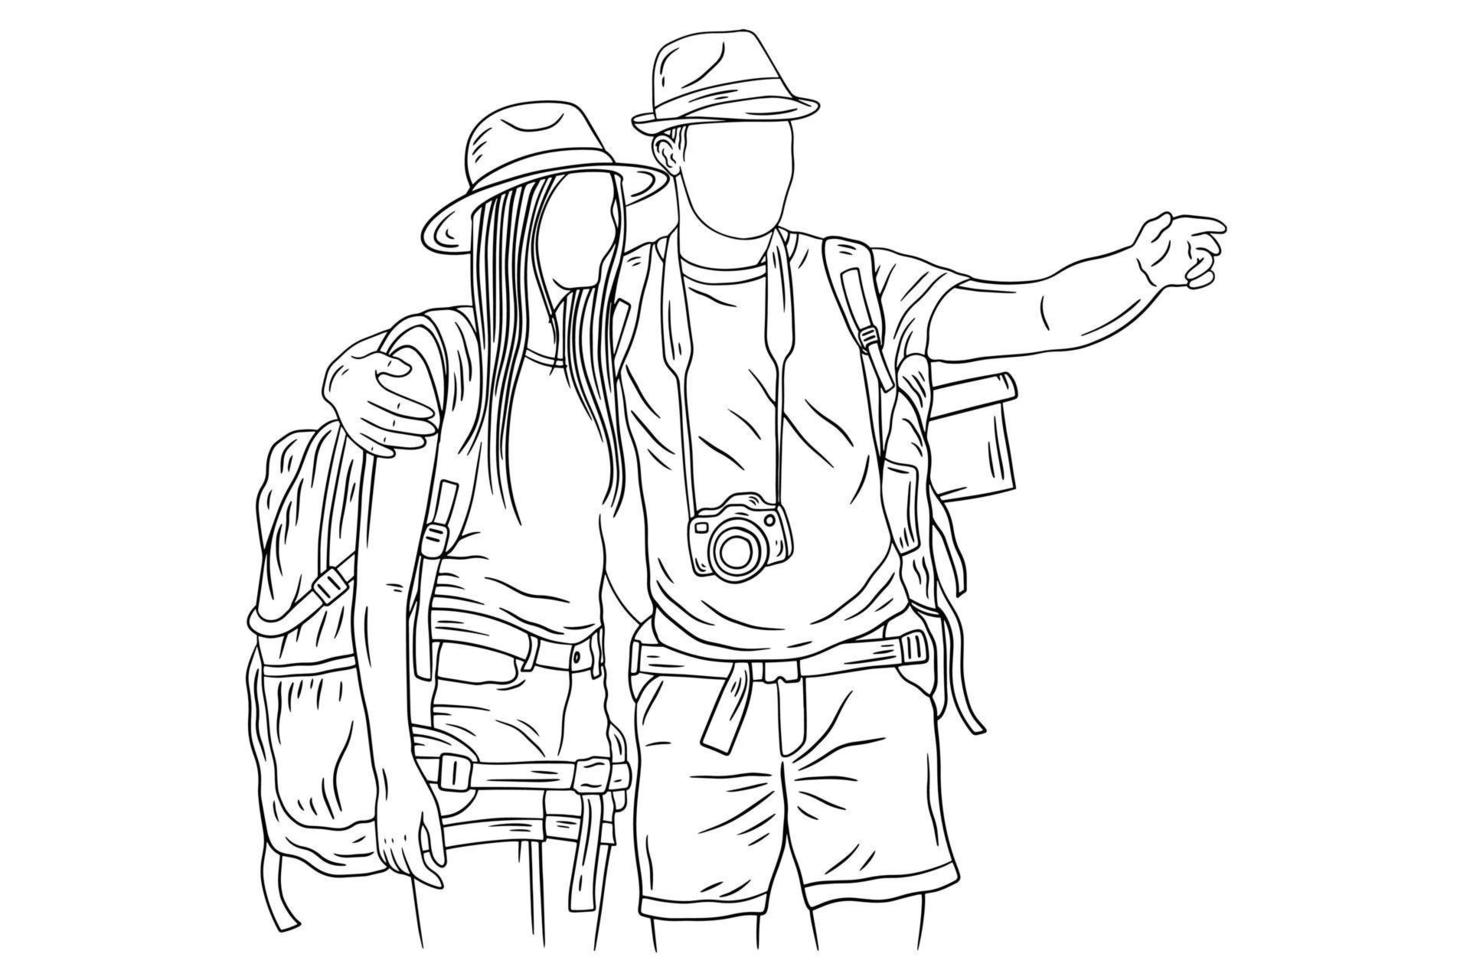 coppia felice avventura esplorare viaggio alpinista campeggio romanticismo viaggio sport linea arte disegnata a mano vettore